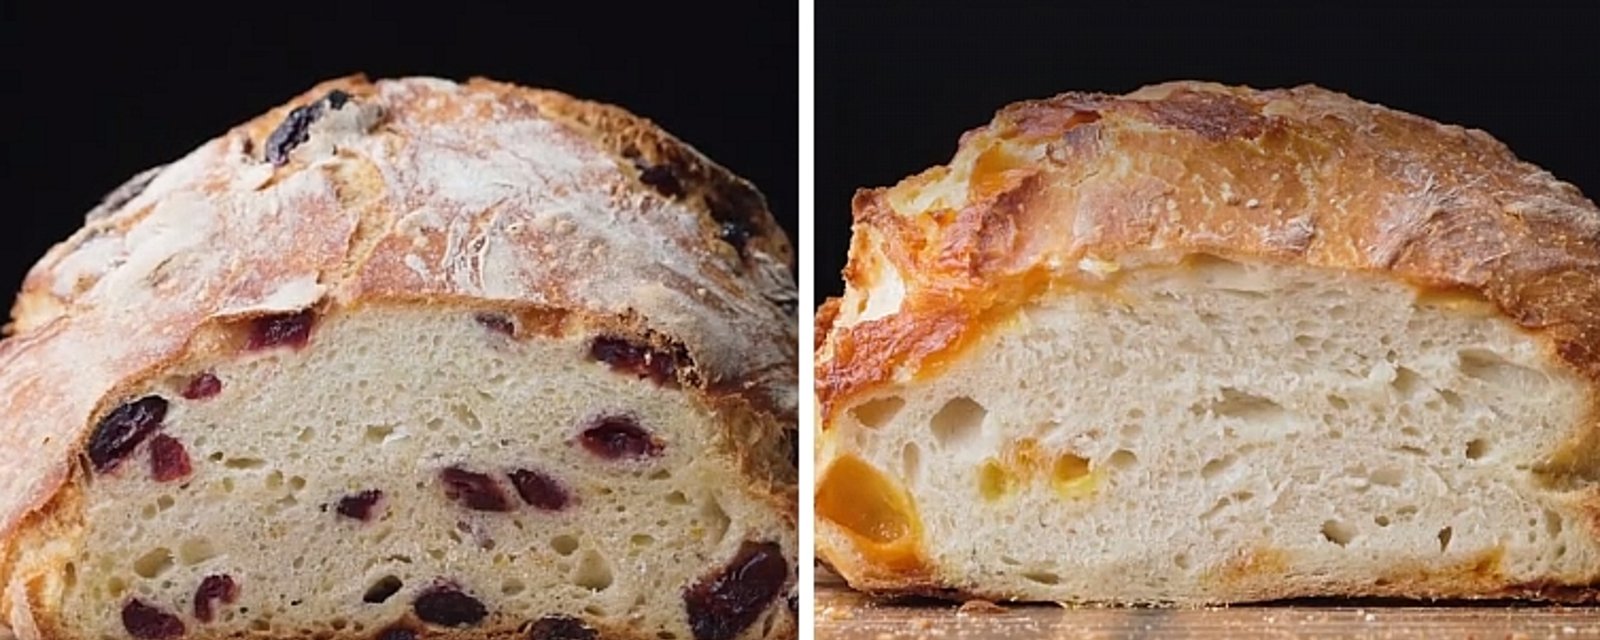 Avec une seule recette de pain croûté, confectionnez 4 délicieuses variantes